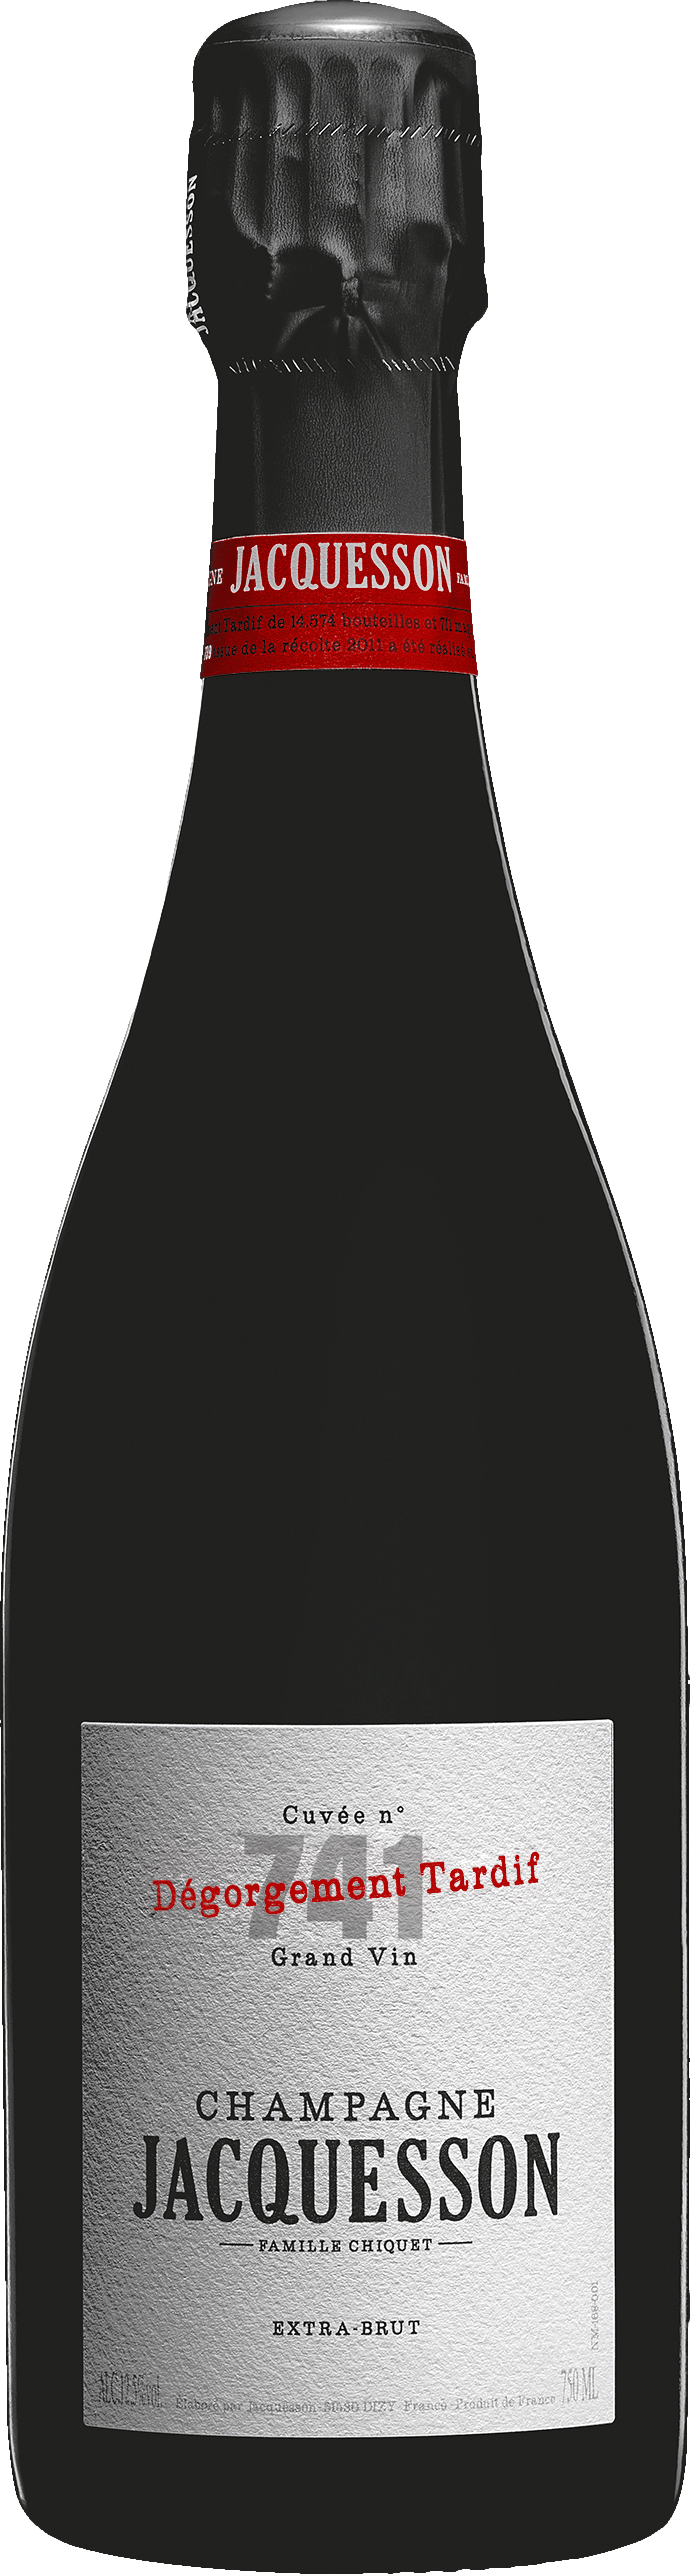 Champagne Jacquesson Cuvee 741 Degorgement Tardif Šumivé 12.0% 0.75 l